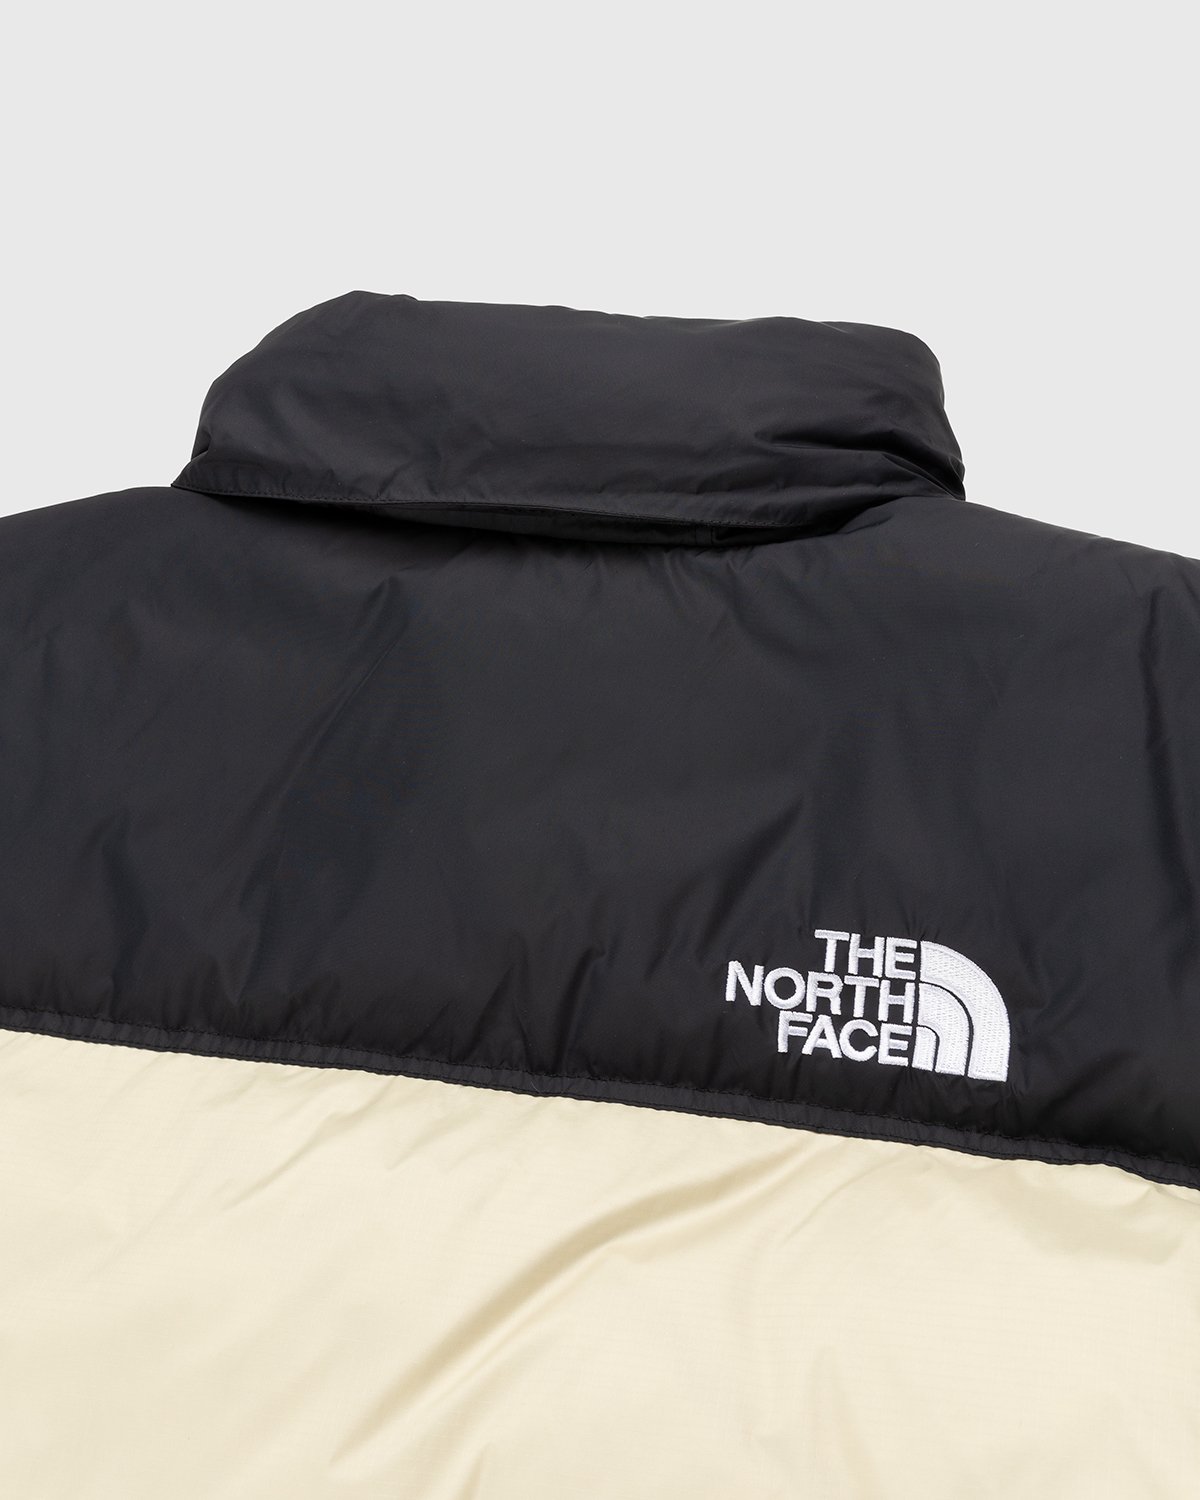 The North Face - 1996 Retro Nuptse Jacket Gravel - Clothing - Beige - Image 8